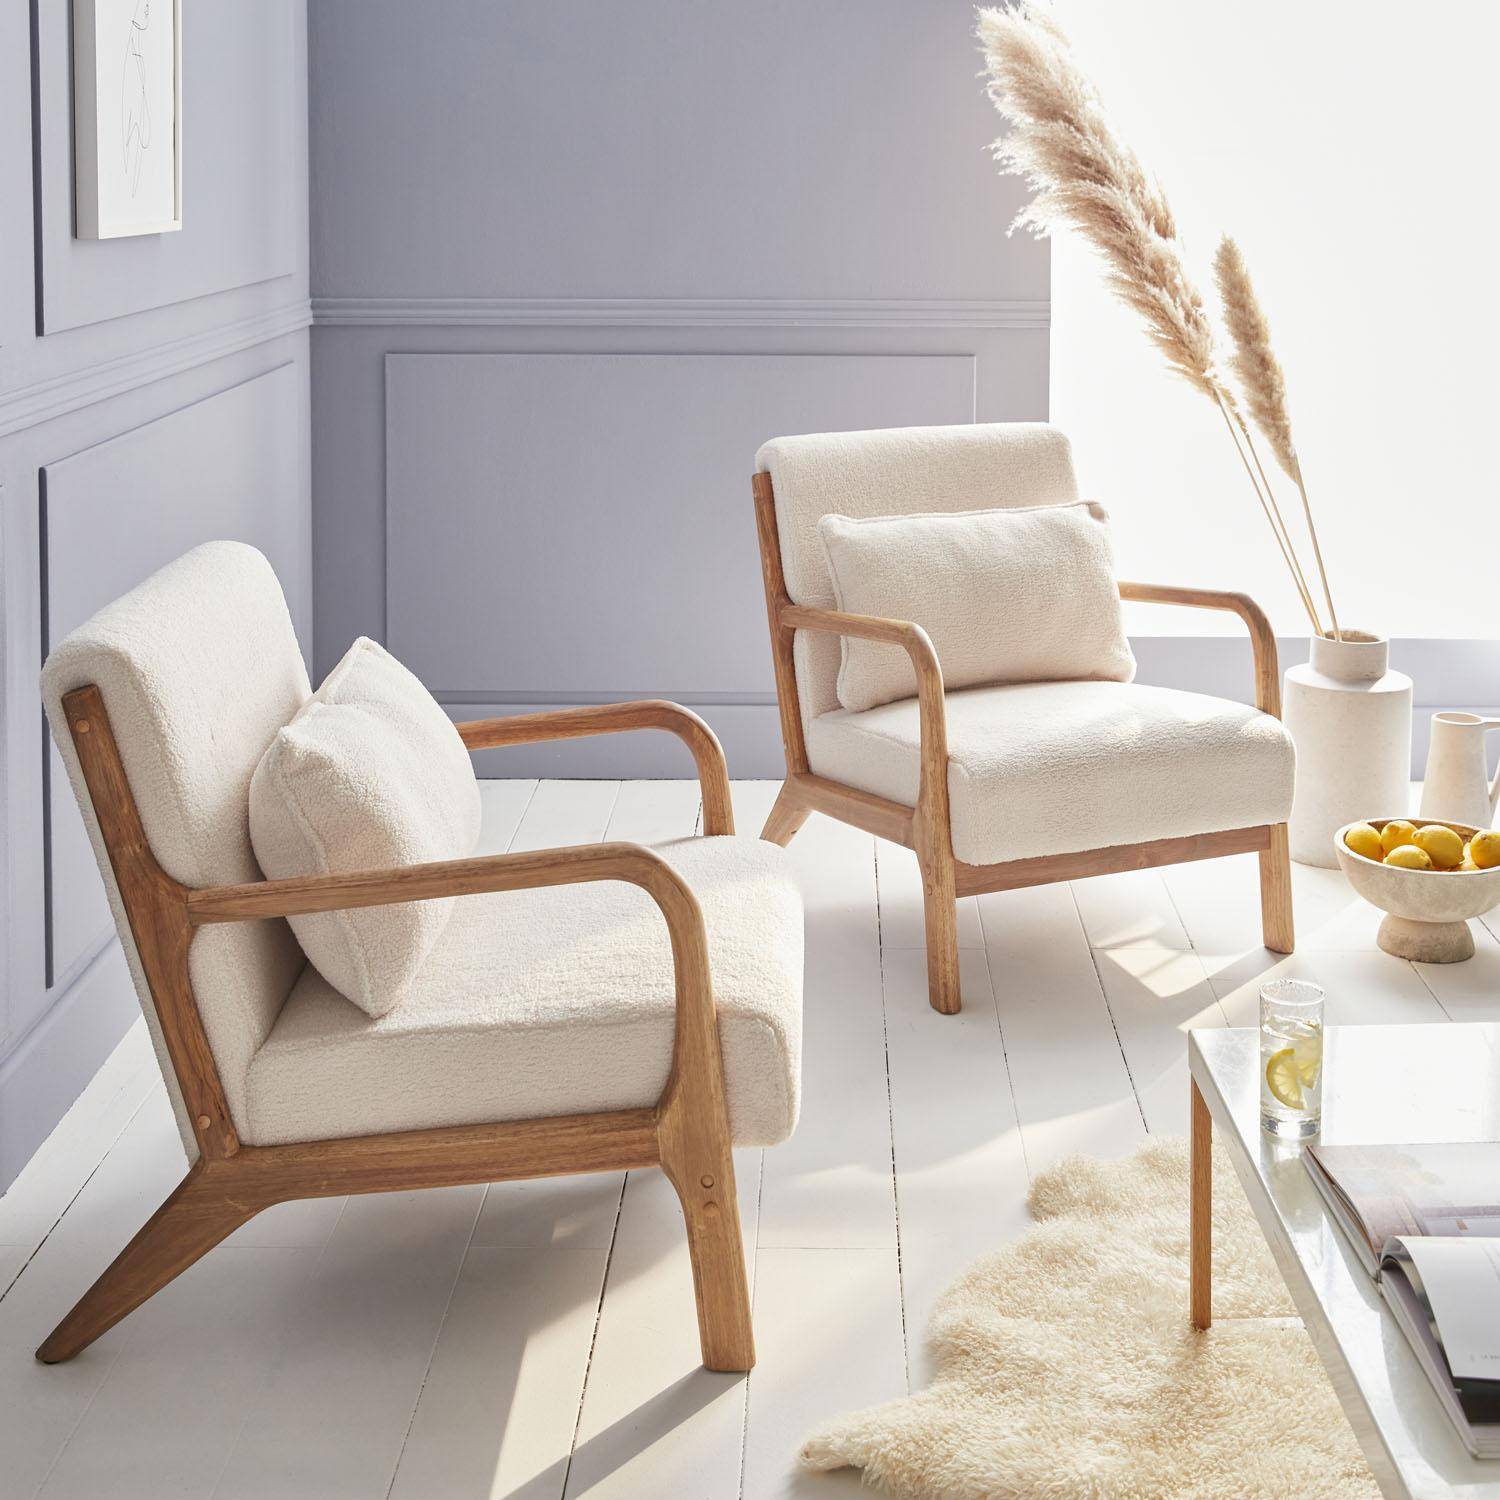 Poltrona di design in legno e tessuto bouclé, 1 seduta fissa diritta, gambe a compasso scandinave, beige Photo2